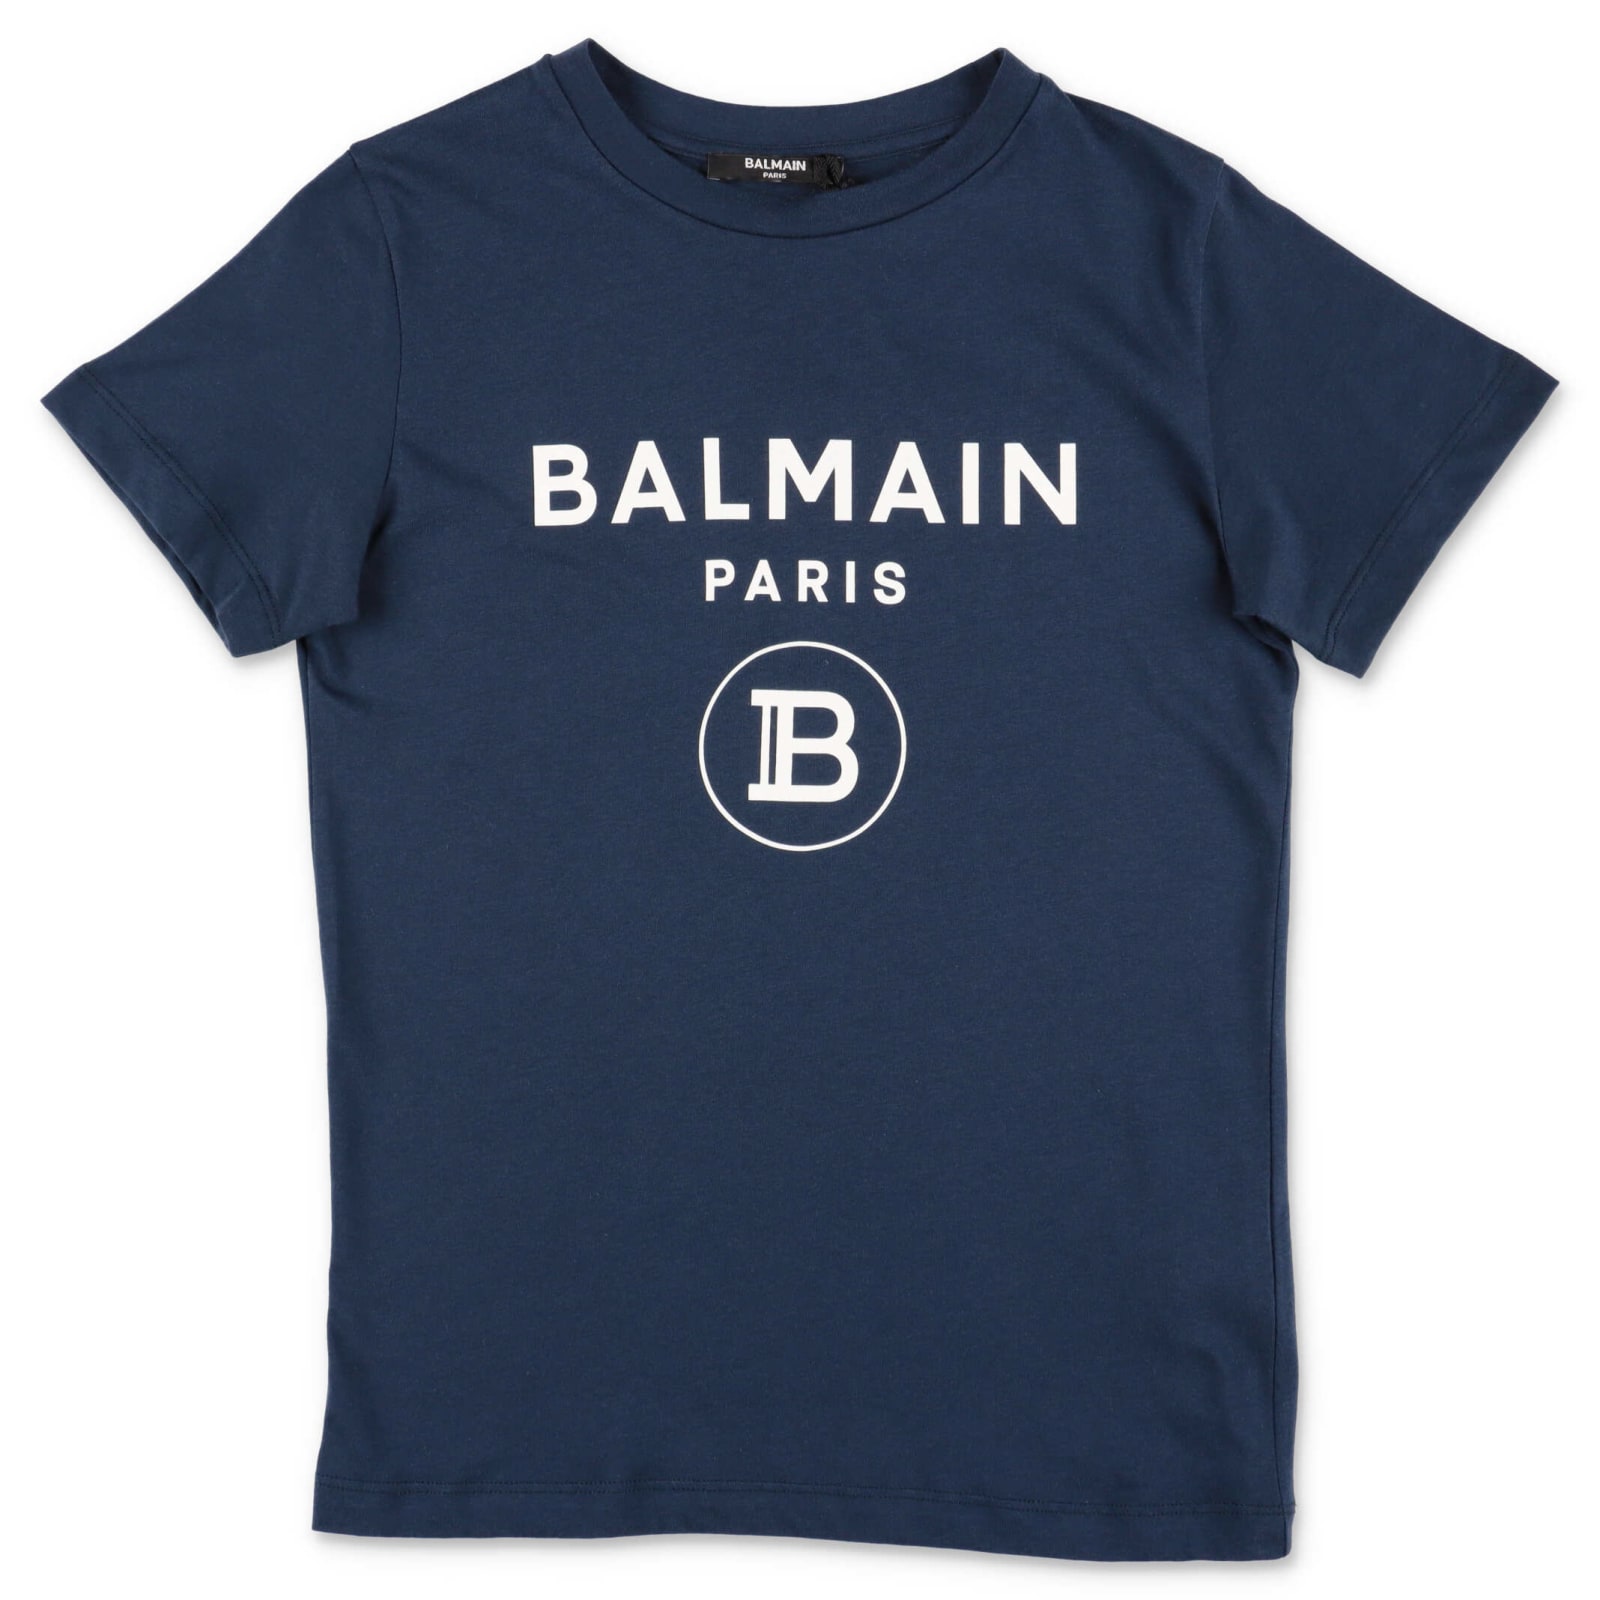 Balmain T-shirt Blu Navy In Jersey Di Cotone